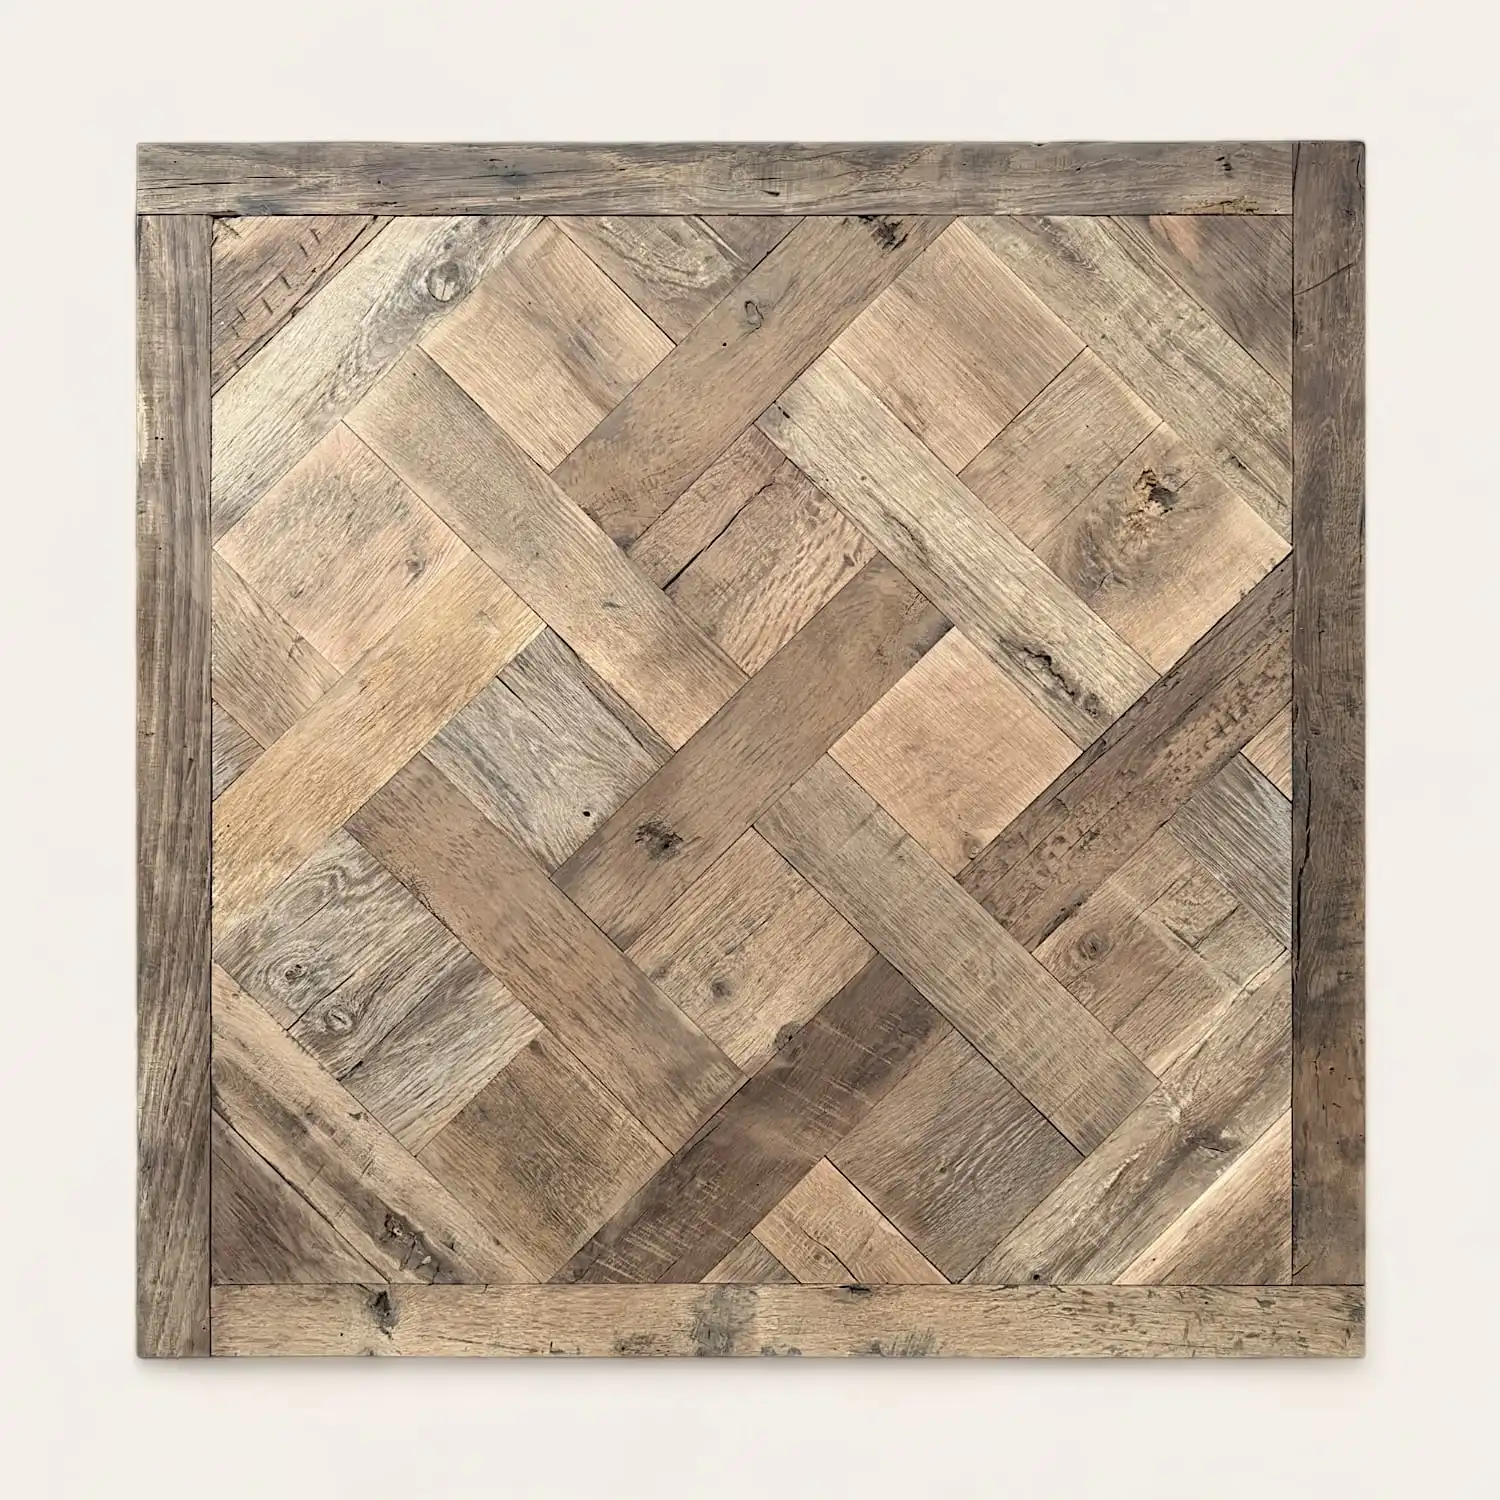  Un carré en bois avec un motif versailles dessus. 